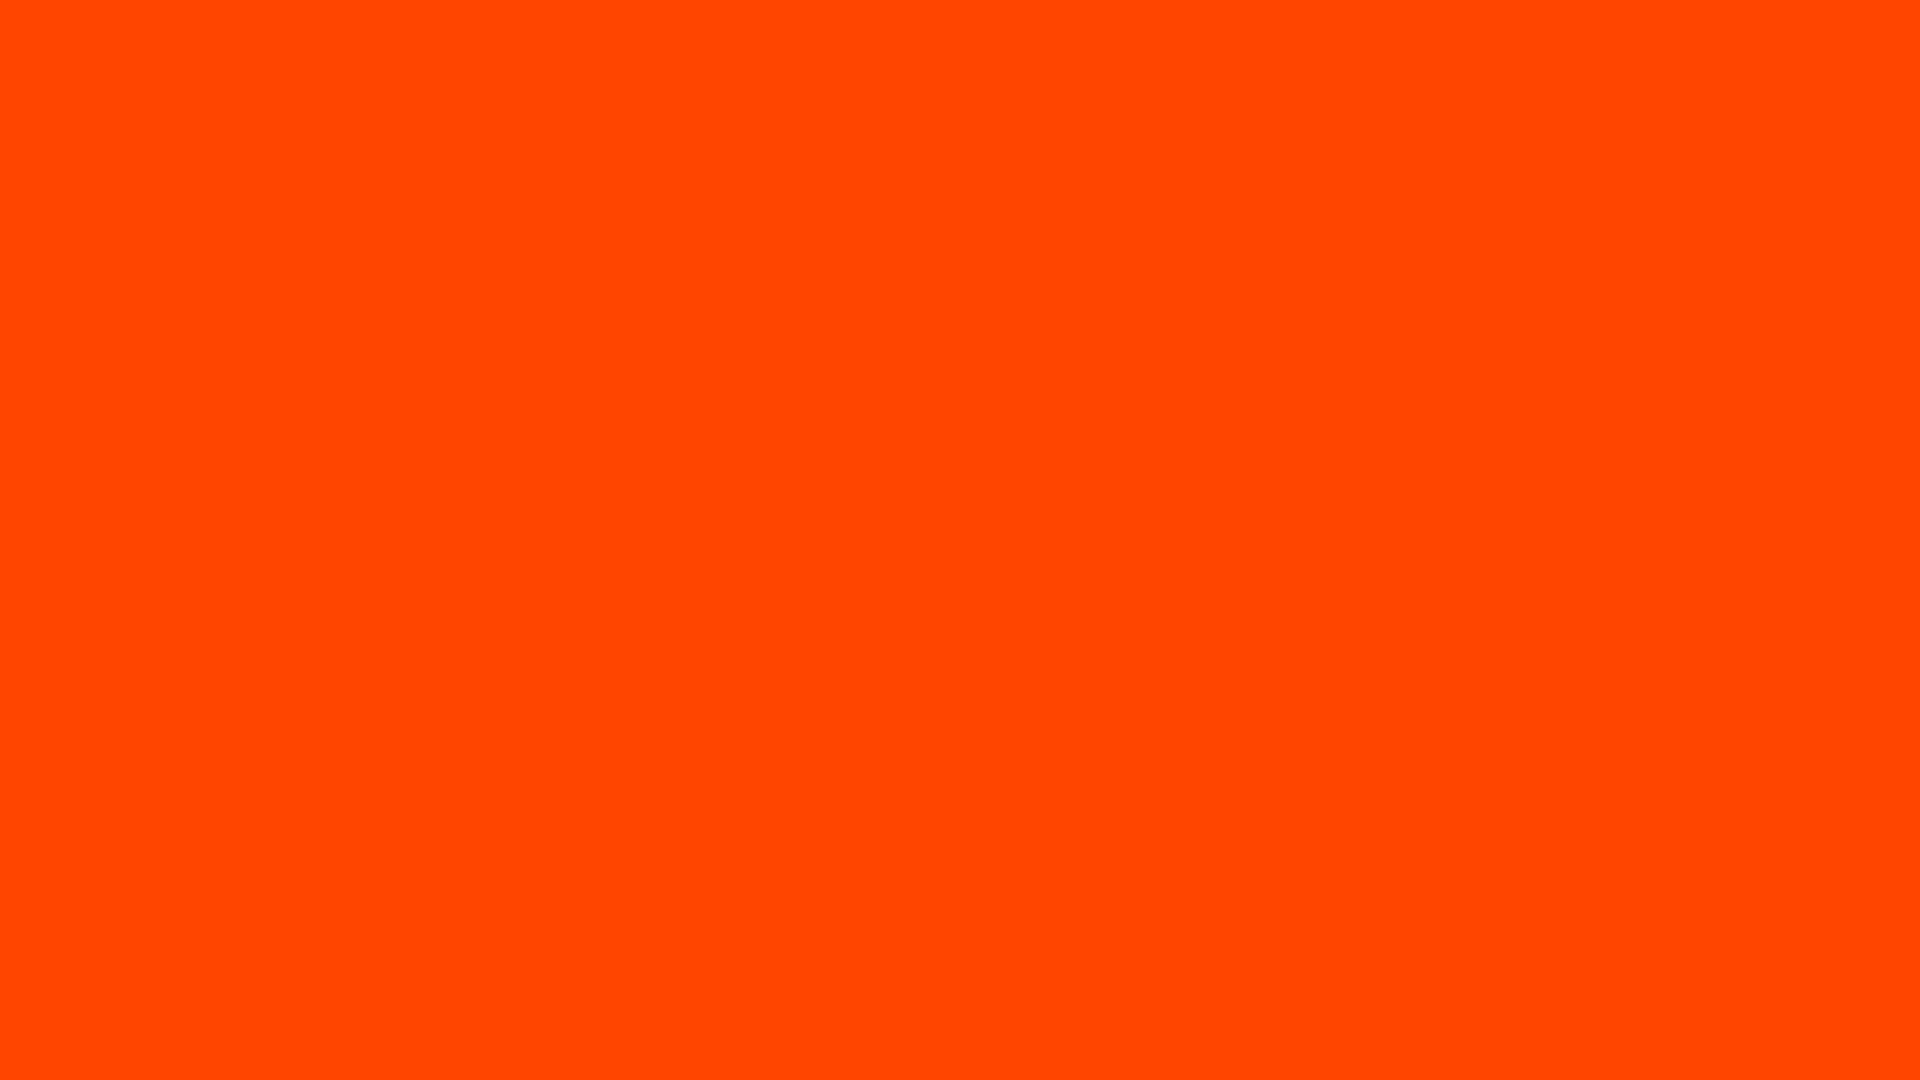 Hình nền abstract màu cam với hình vuông mang đến cho bạn một trải nghiệm thú vị với nhiều hình vuông xếp chồng lên nhau. Bộ hình nền này đem lại sự năng động và trẻ trung, cho bạn cảm giác như đang sống trong một thế giới đầy màu sắc và sự đa dạng. Hãy để bộ hình nền này làm nổi bật máy tính của bạn và giúp bạn trở thành người độc đáo nhất.